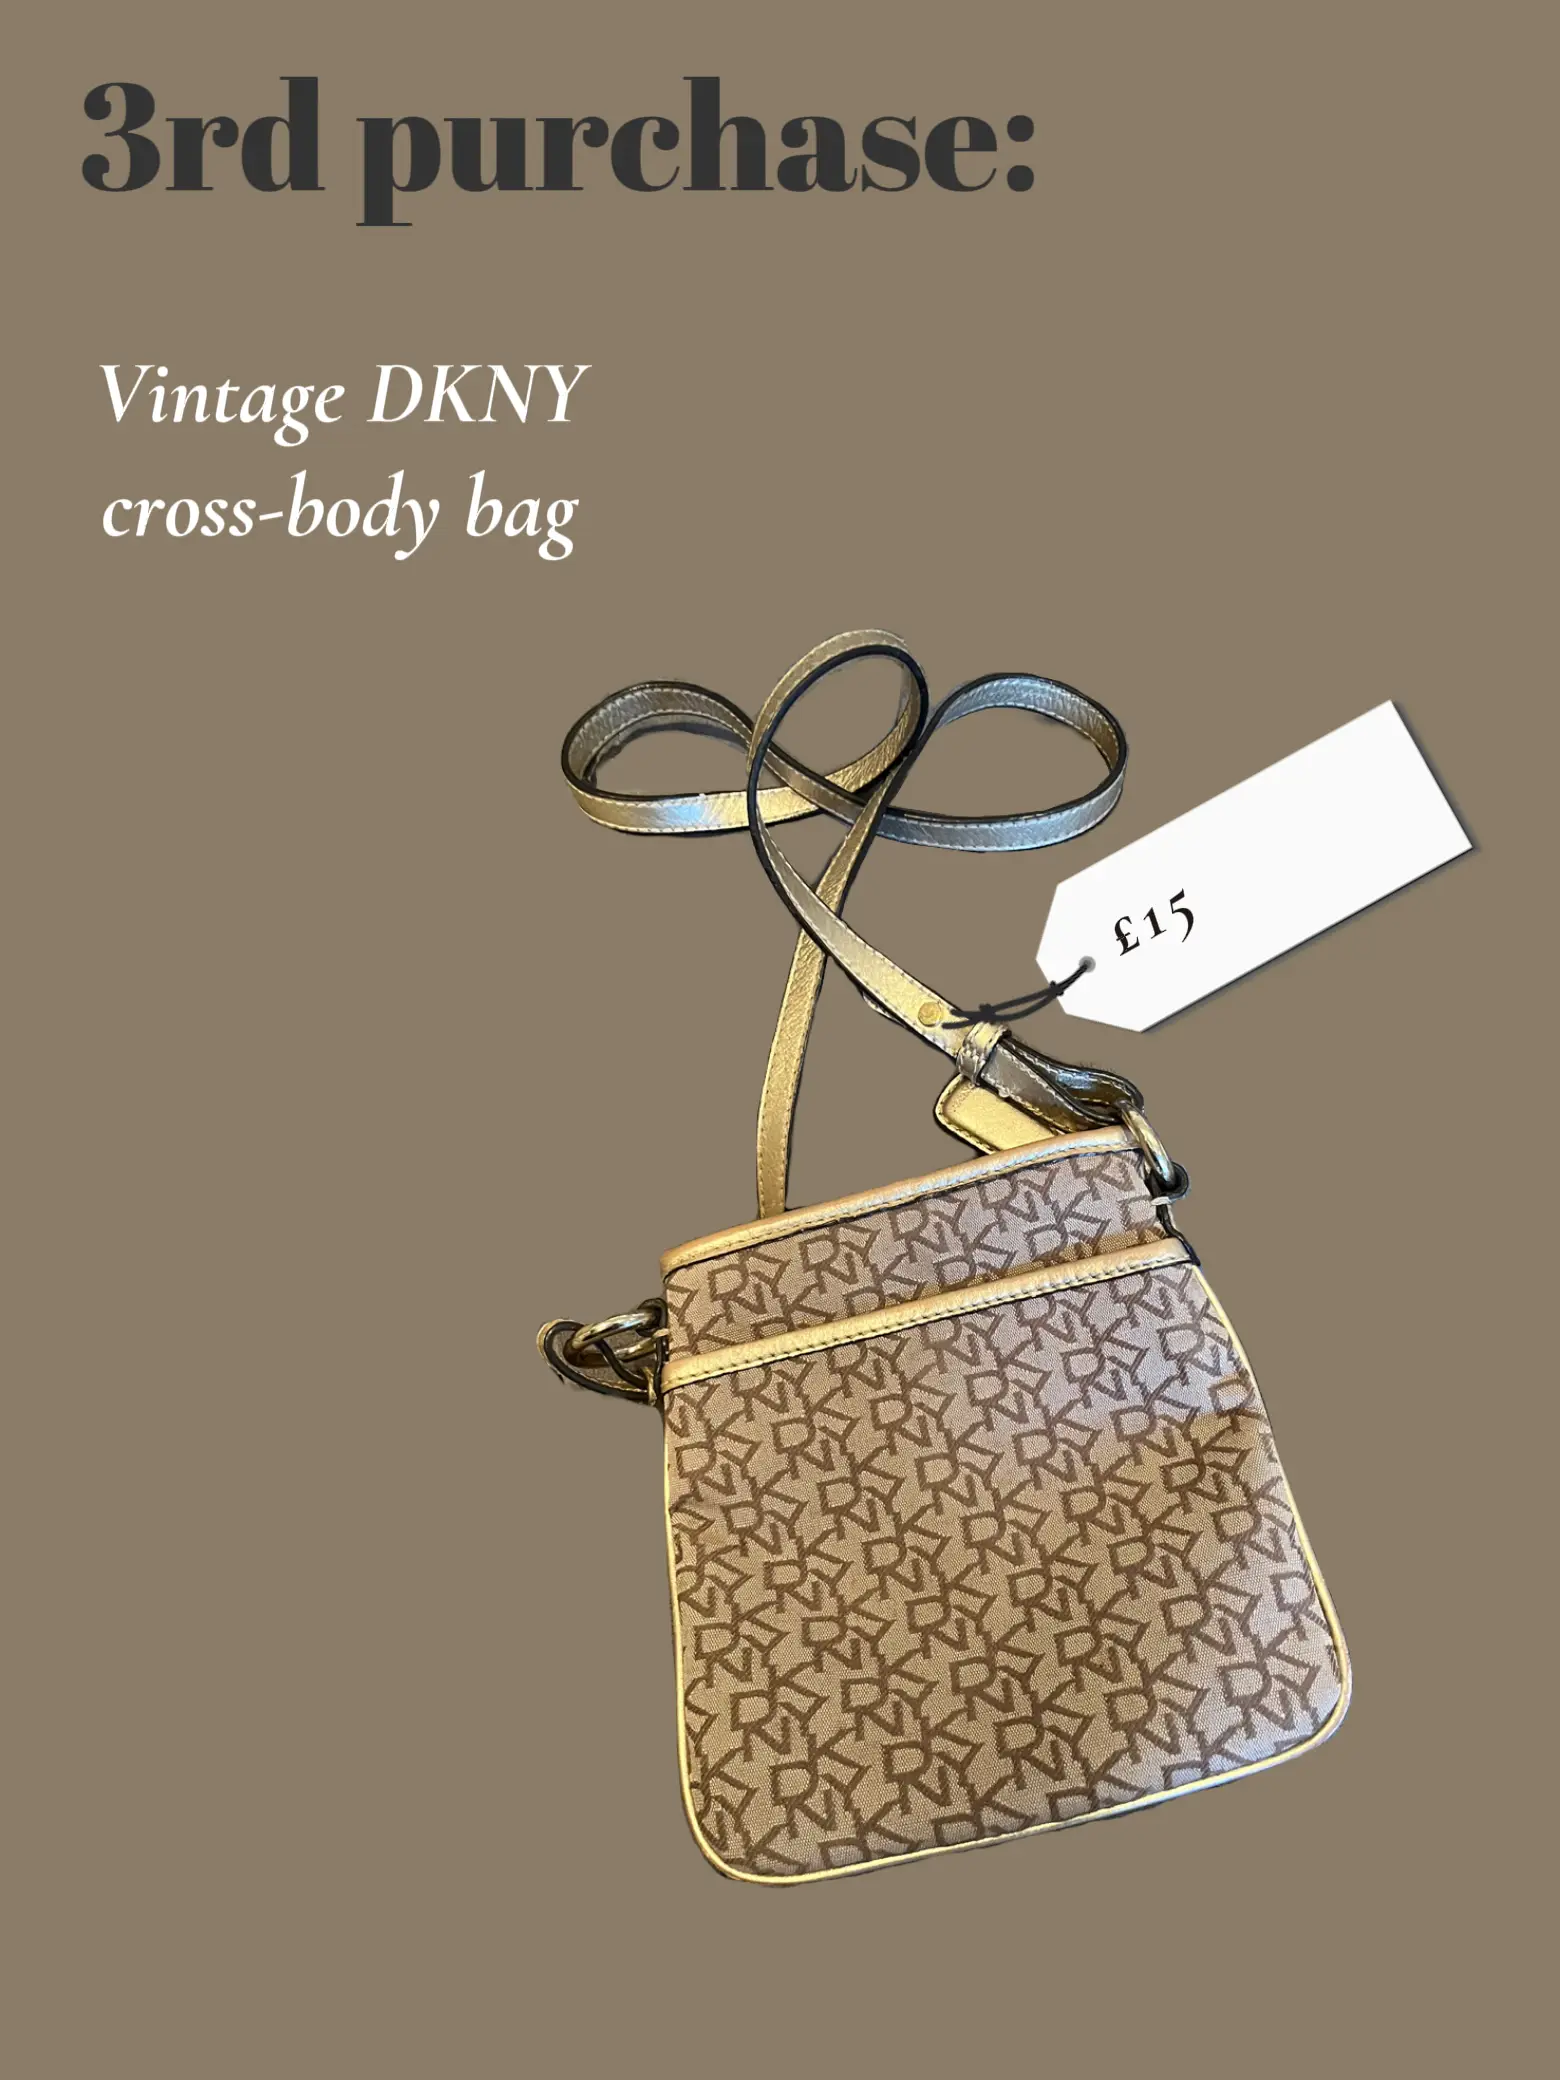 DkNY cross bodybag - Vinted